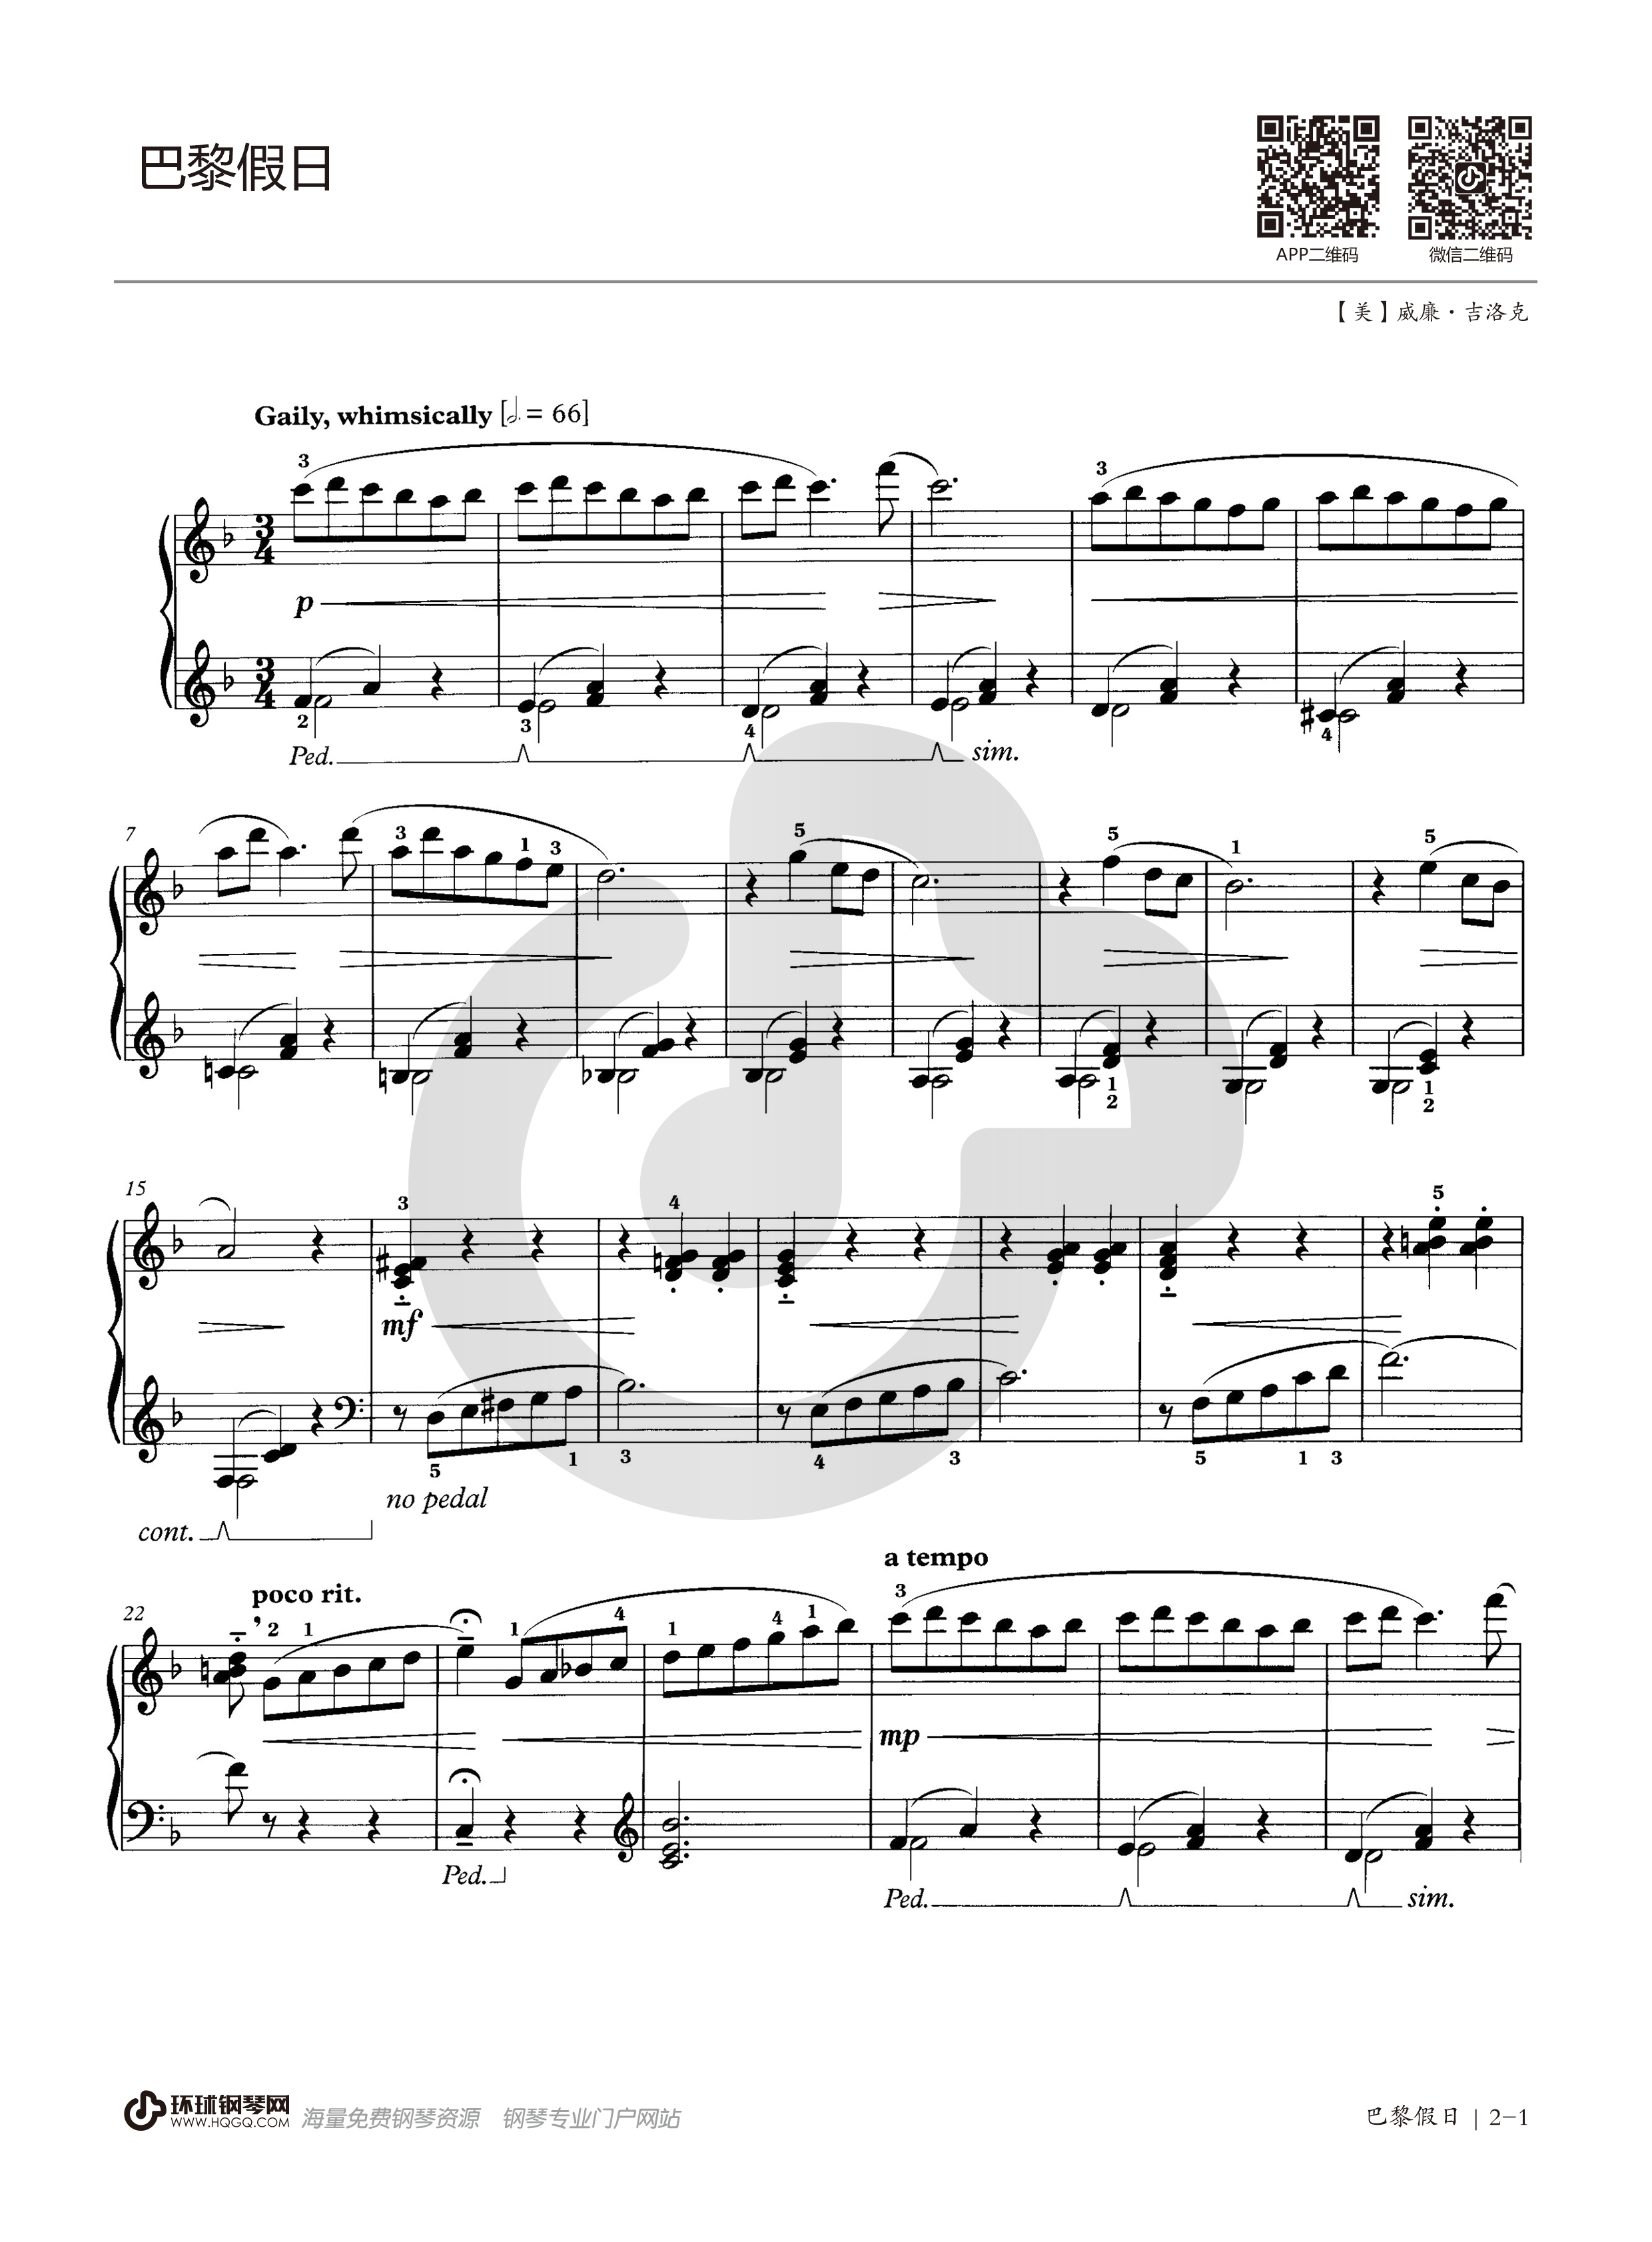 英皇钢琴考级教材曲谱(英皇钢琴三级考级曲目谱子)